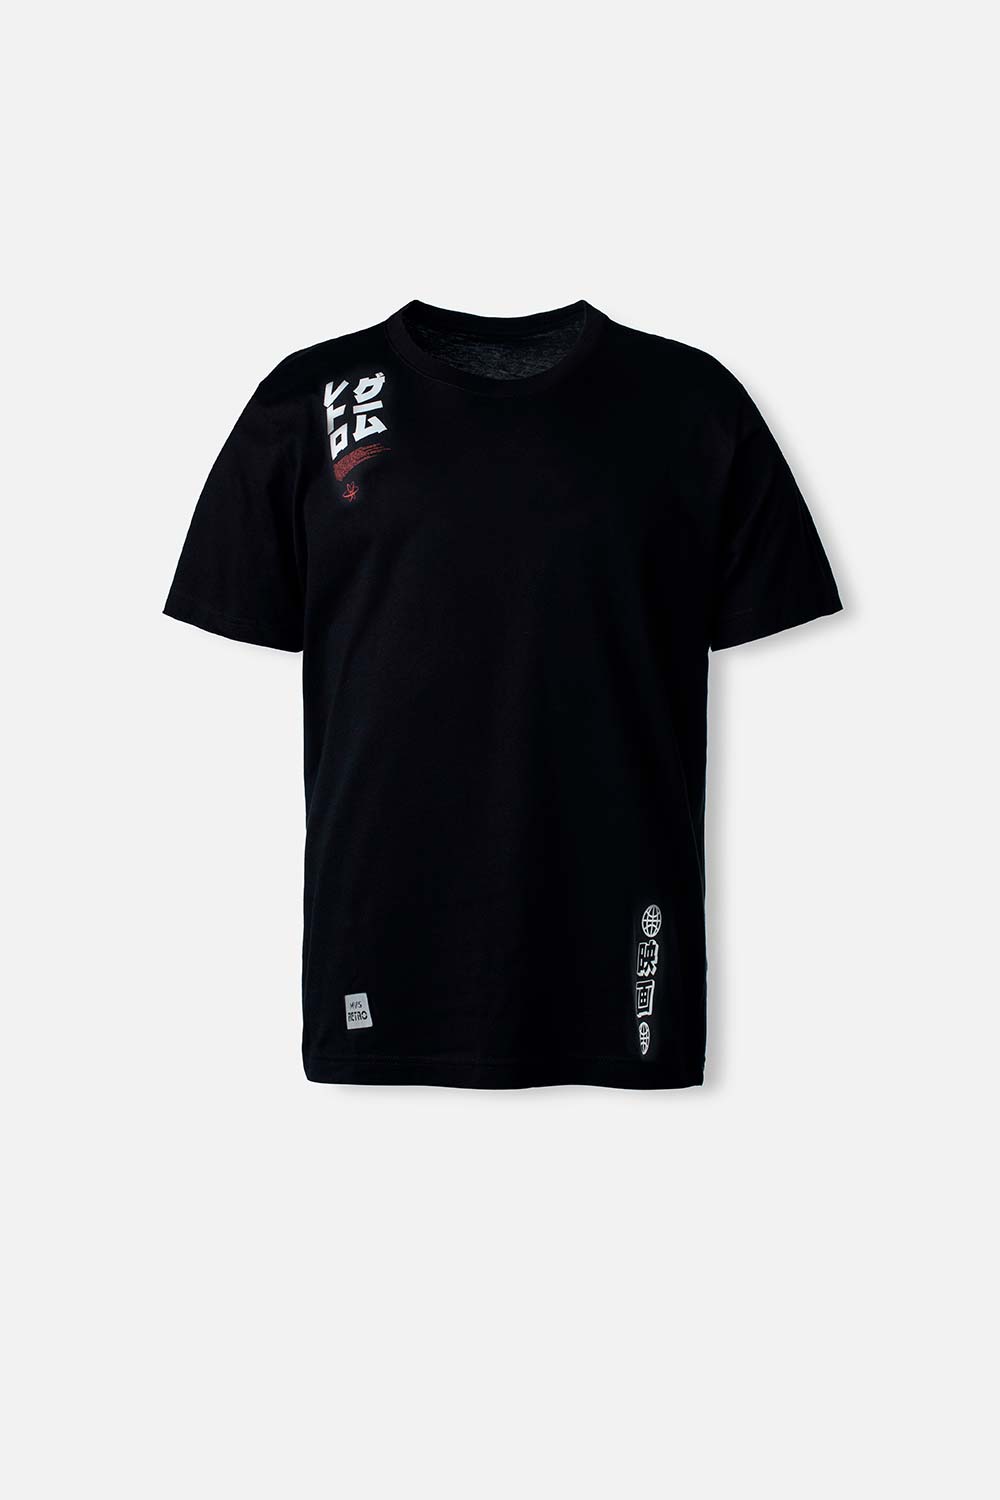 Camiseta Movies negra cuello redondo género neutro XS-0